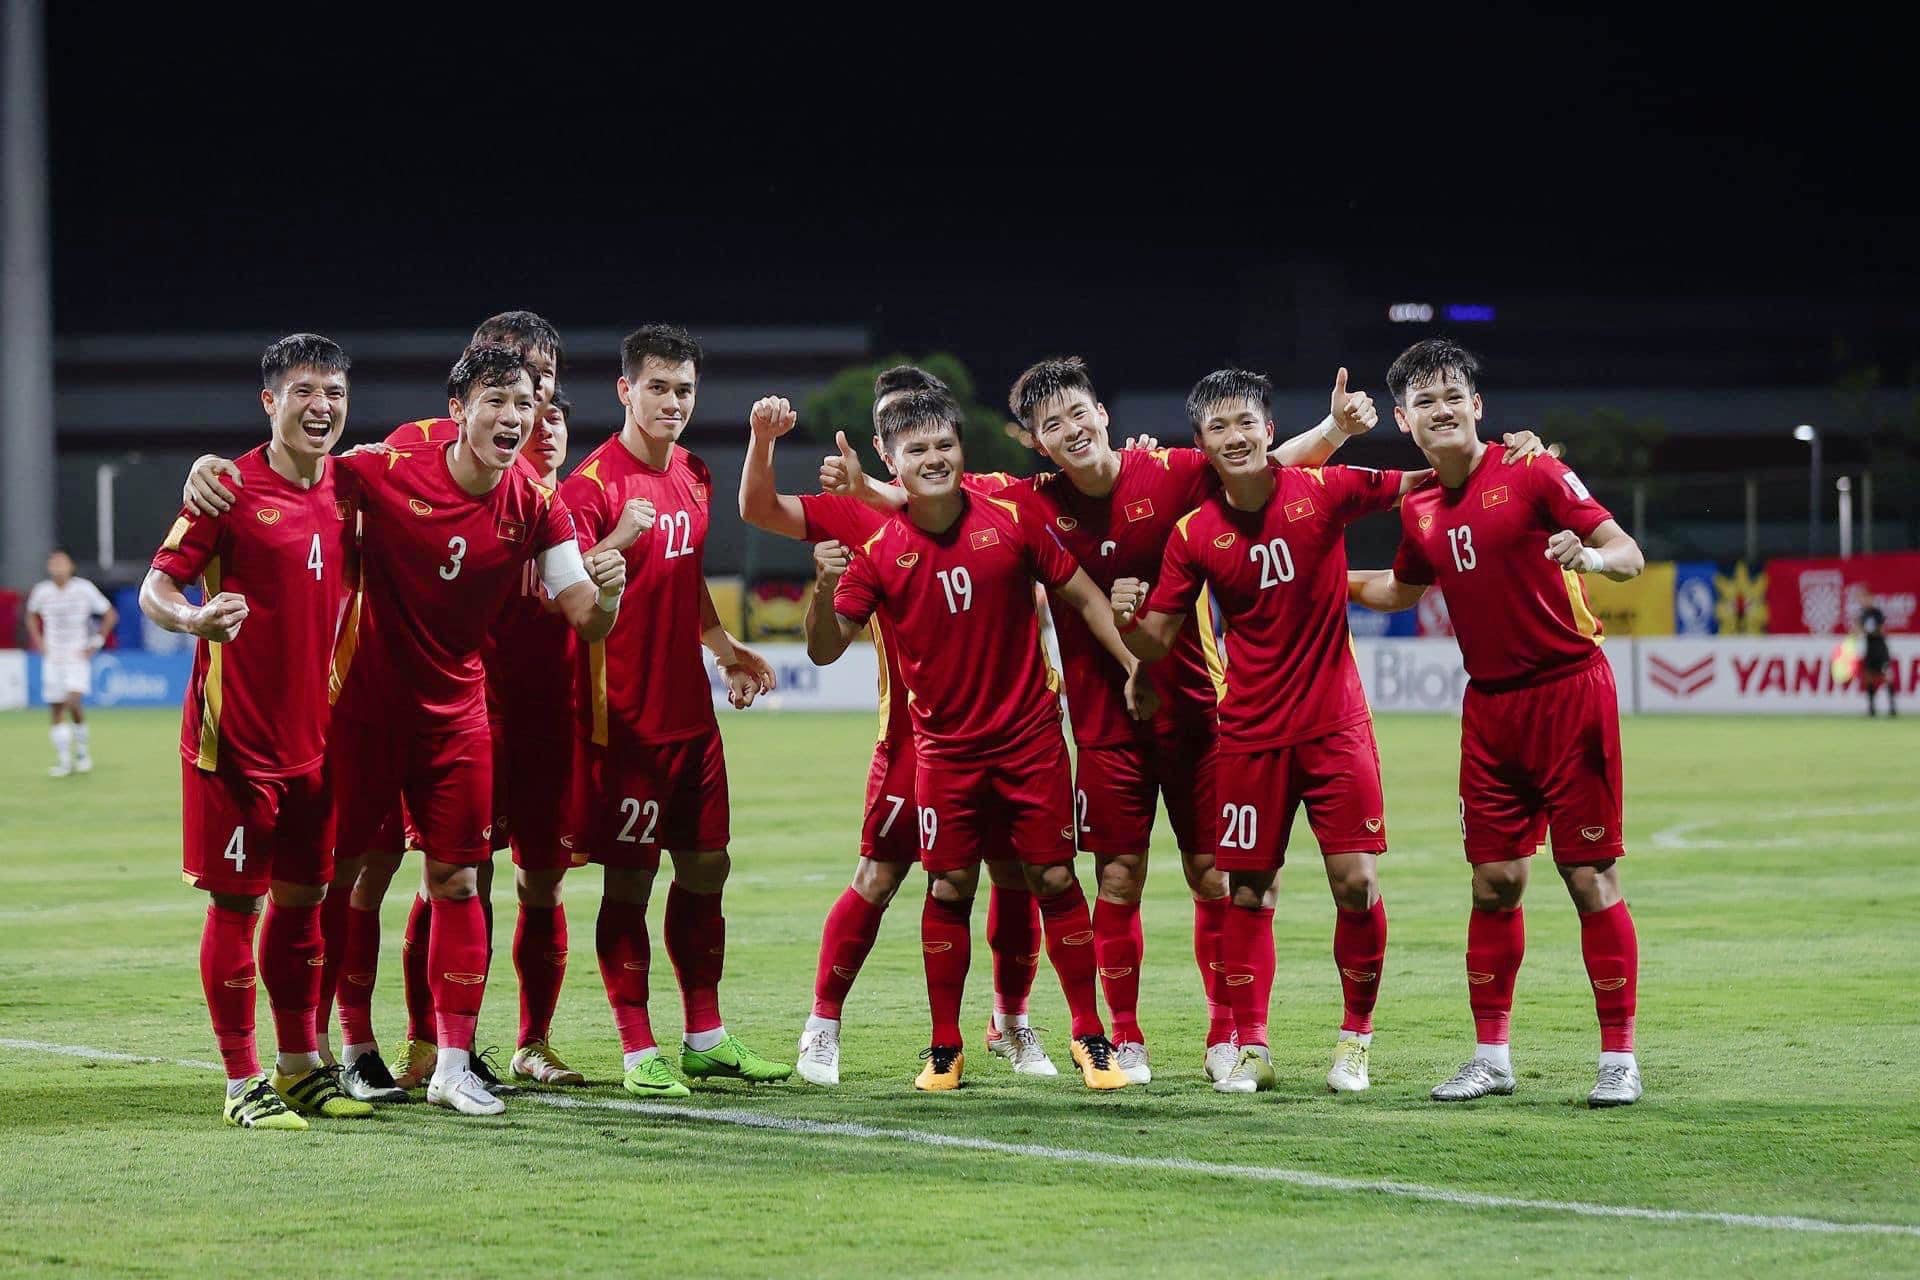 Quế Ngọc Hải hỏi 'lạ' trước trận đấu với ĐT Thái Lan, fan đáp lại 'phũ phàng' nhưng đầy ẩn ý